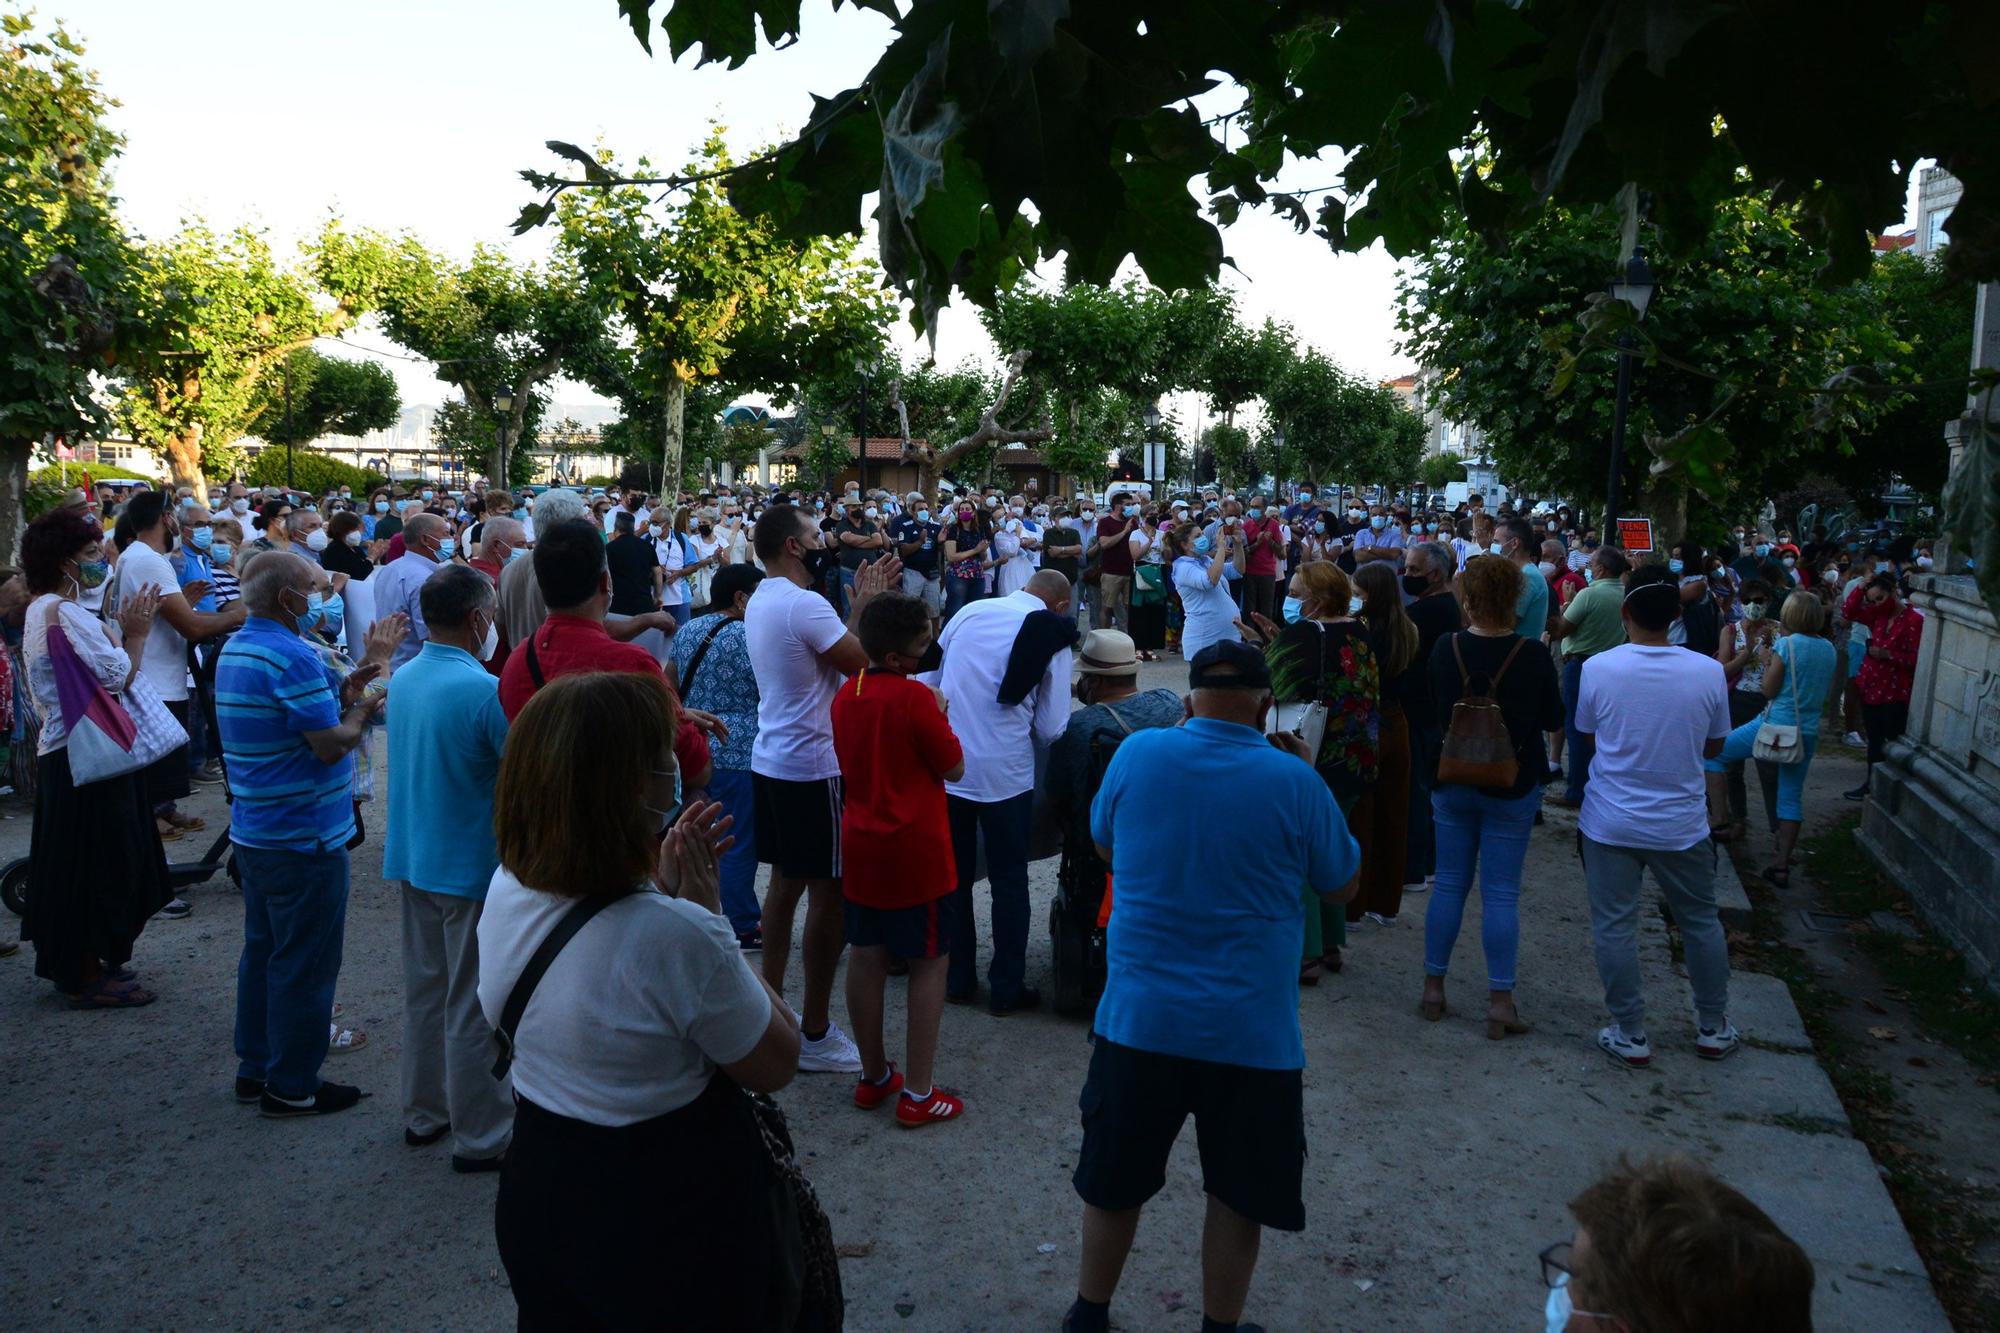 Marcha por la sanidad pública en Cangas